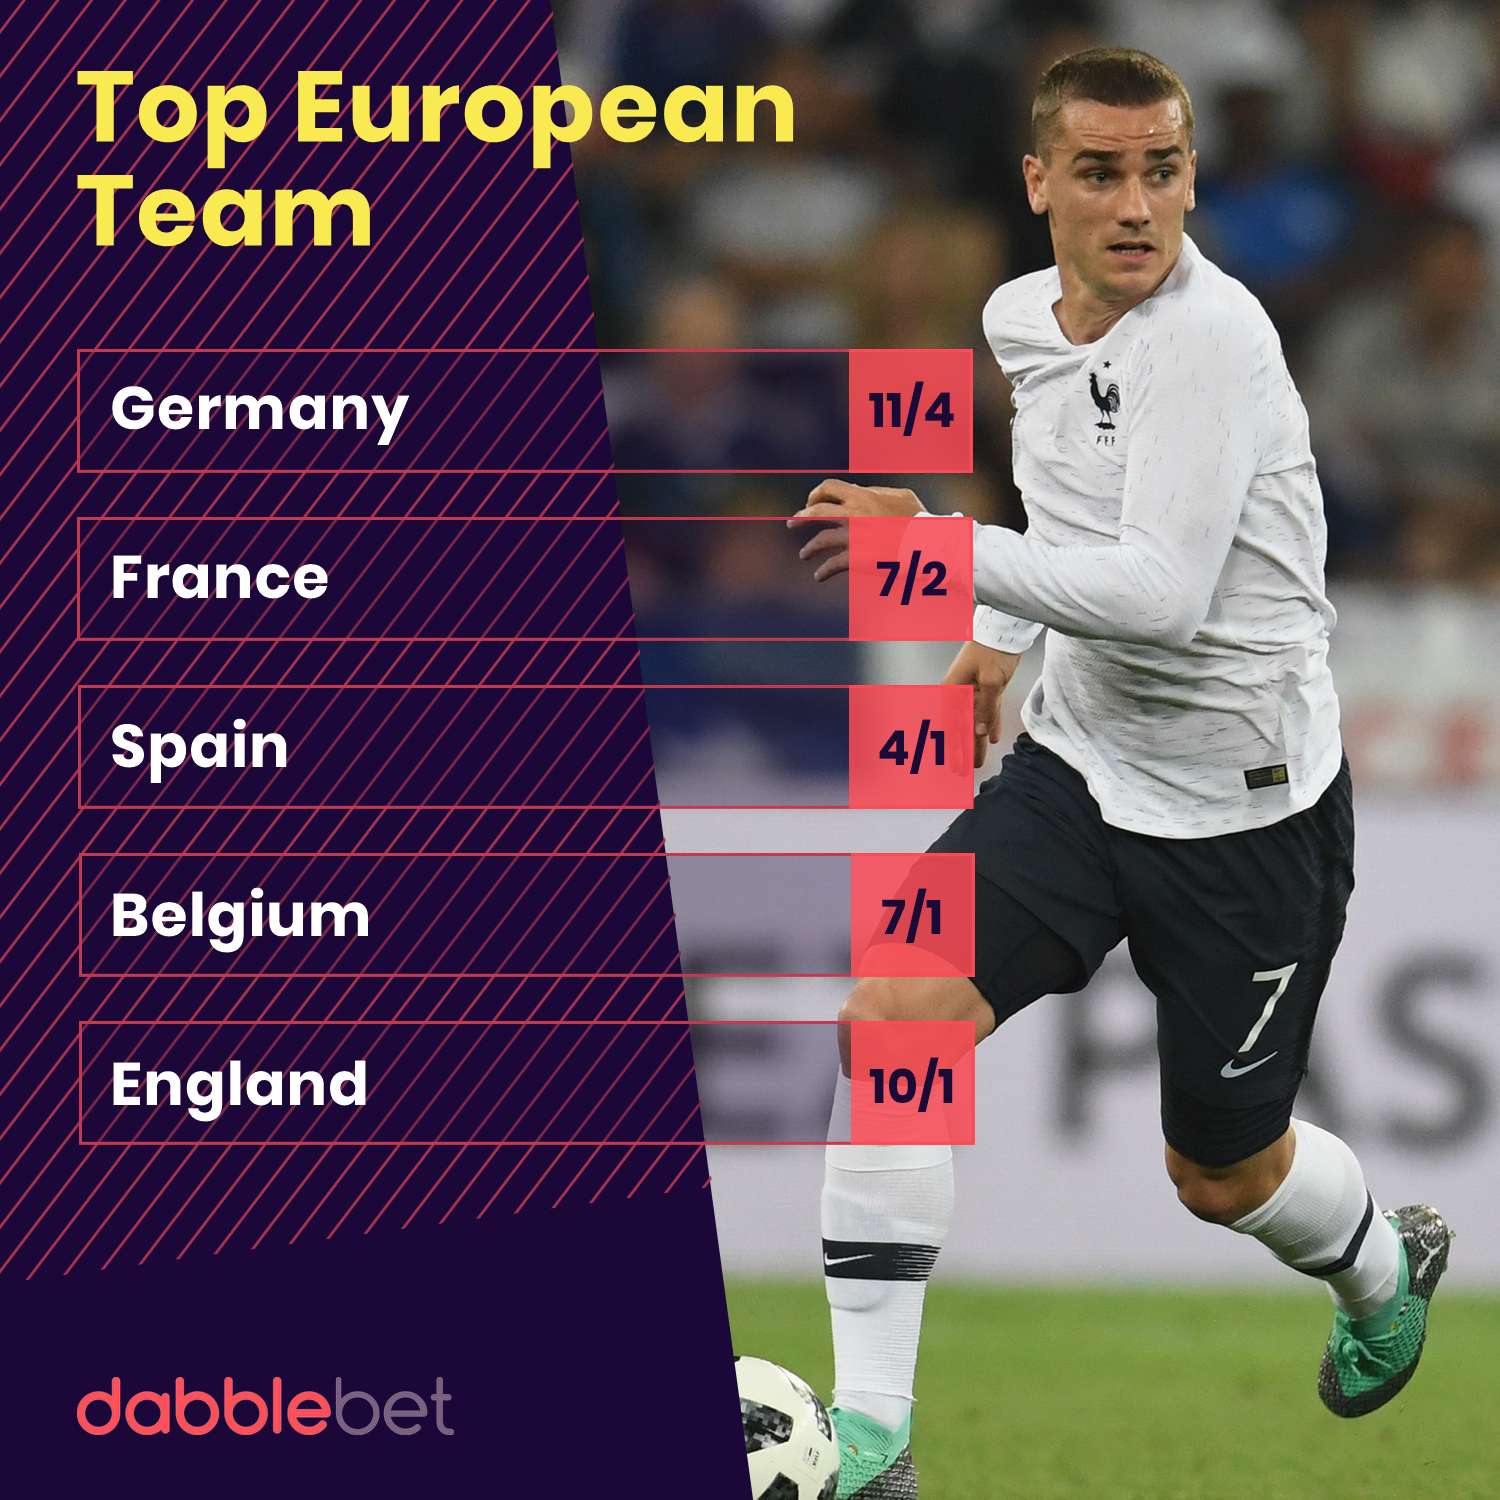 World Cup Top European Team odds from dabblebet